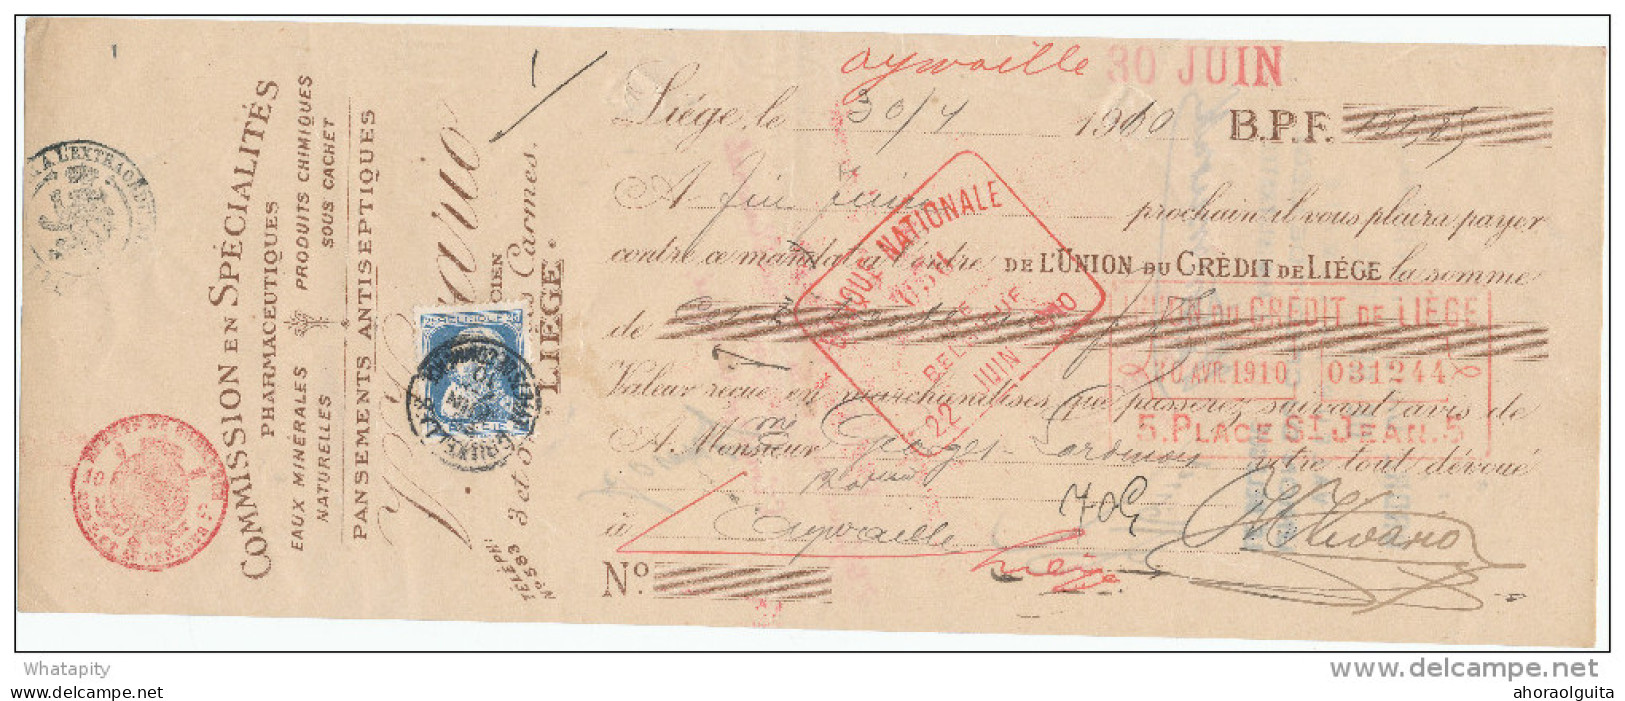 BELGIQUE - Document Financier Via Poste Belge 1910 - Spécialités En Pharmacie Vivario à LIEGE  -- VV429 - Pharmazie